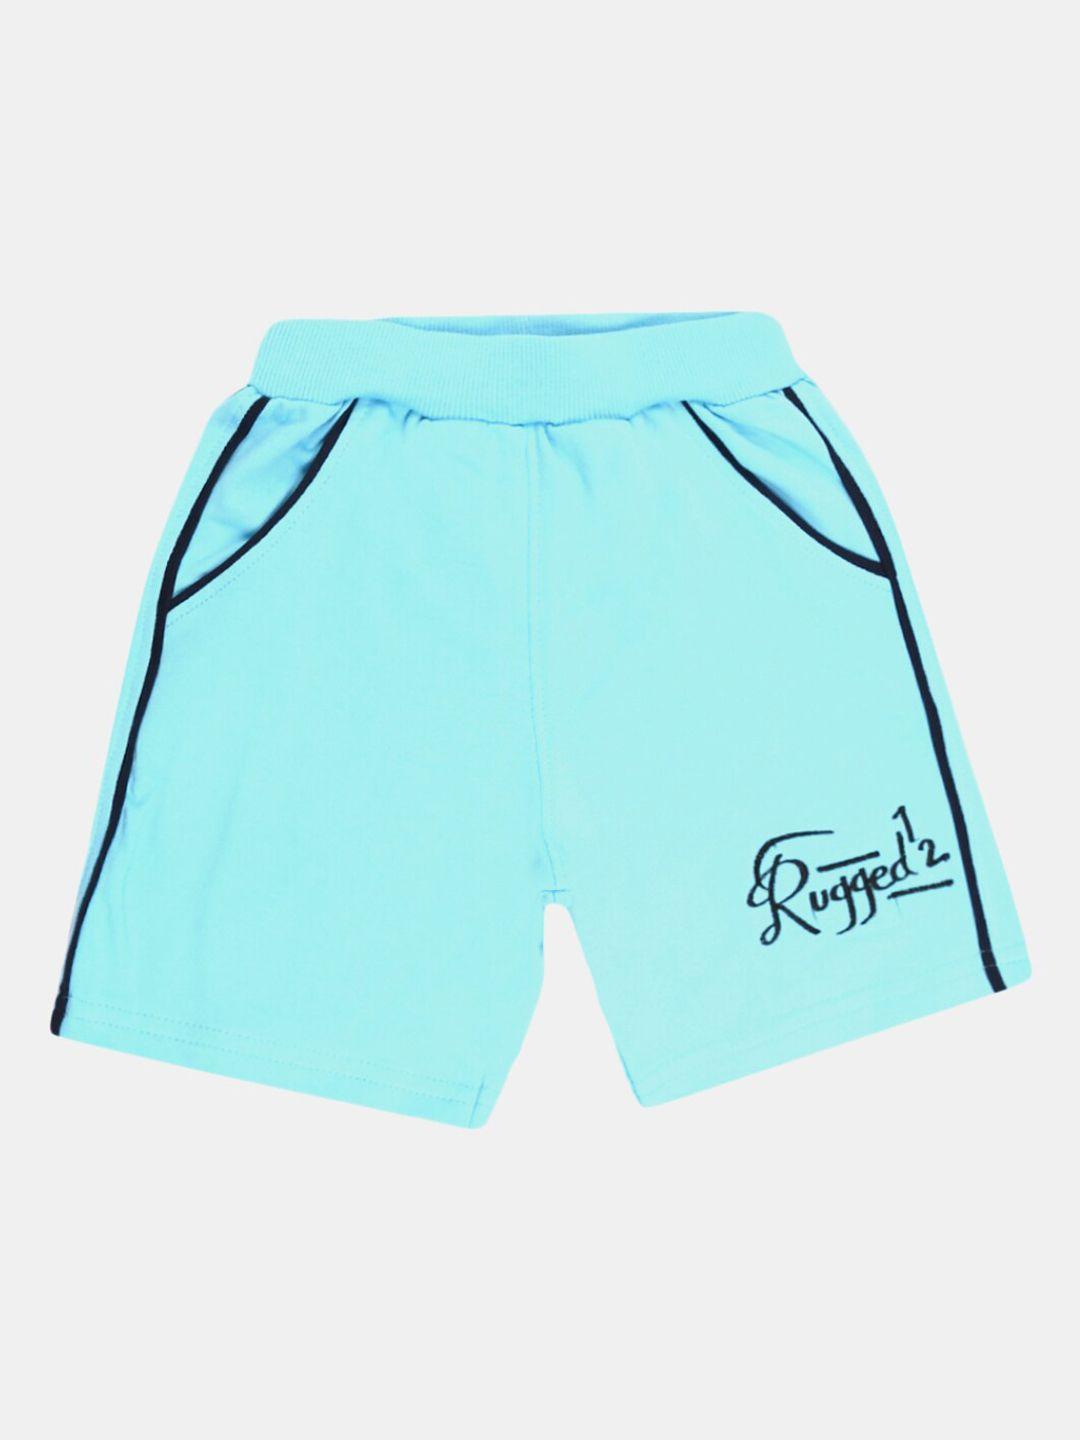 v-mart boys blue sports shorts